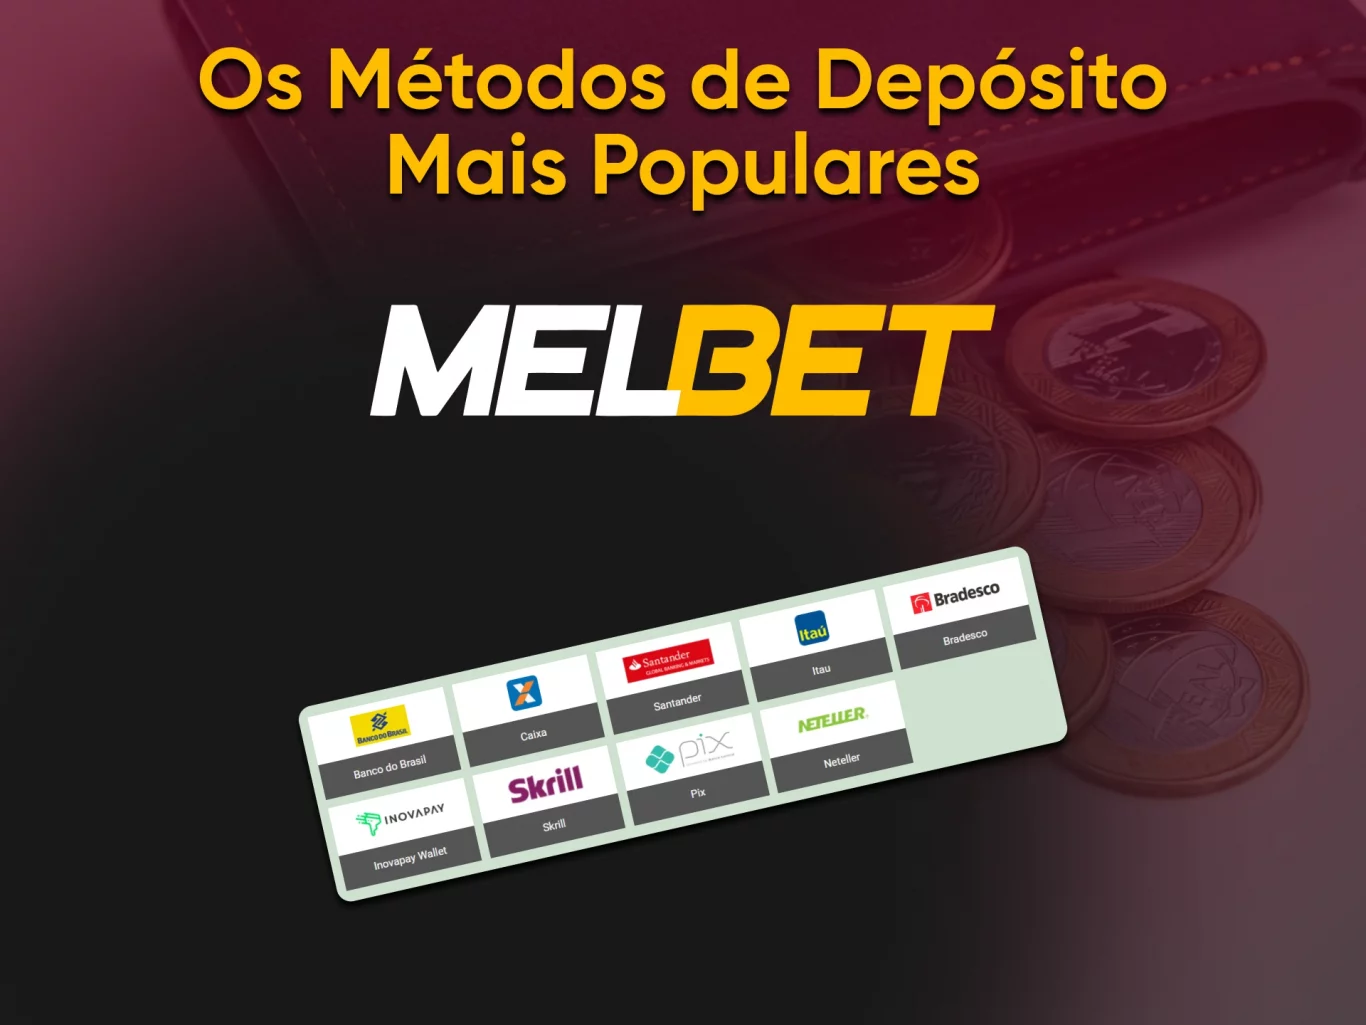 Melbet Brasil - Formas de depósitos e retiradas